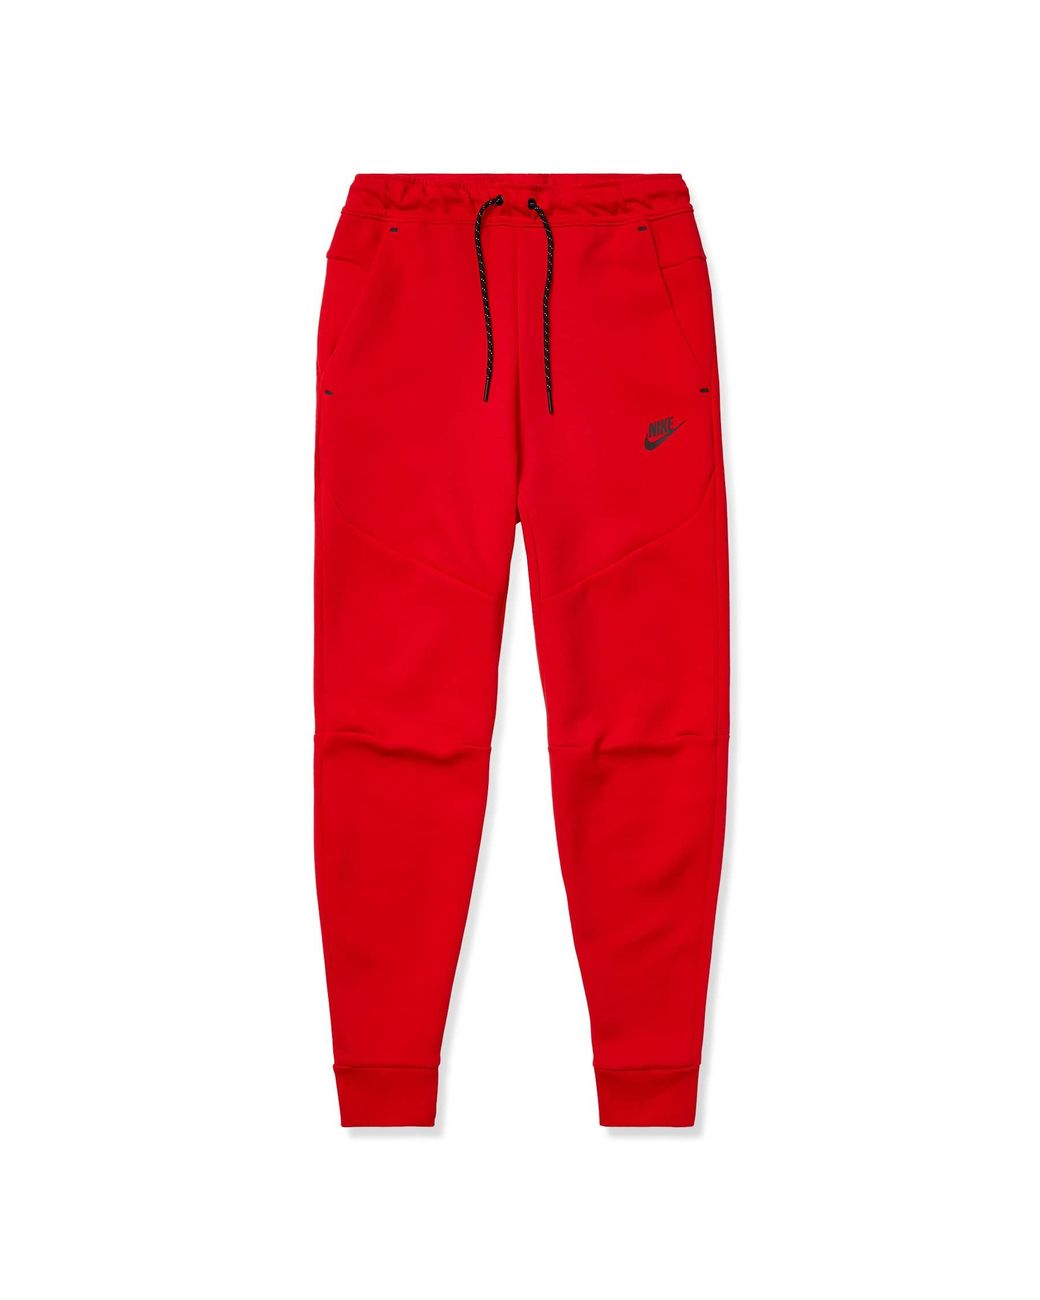 Nike Sportswear Tech Fleece Pants in Red for Men